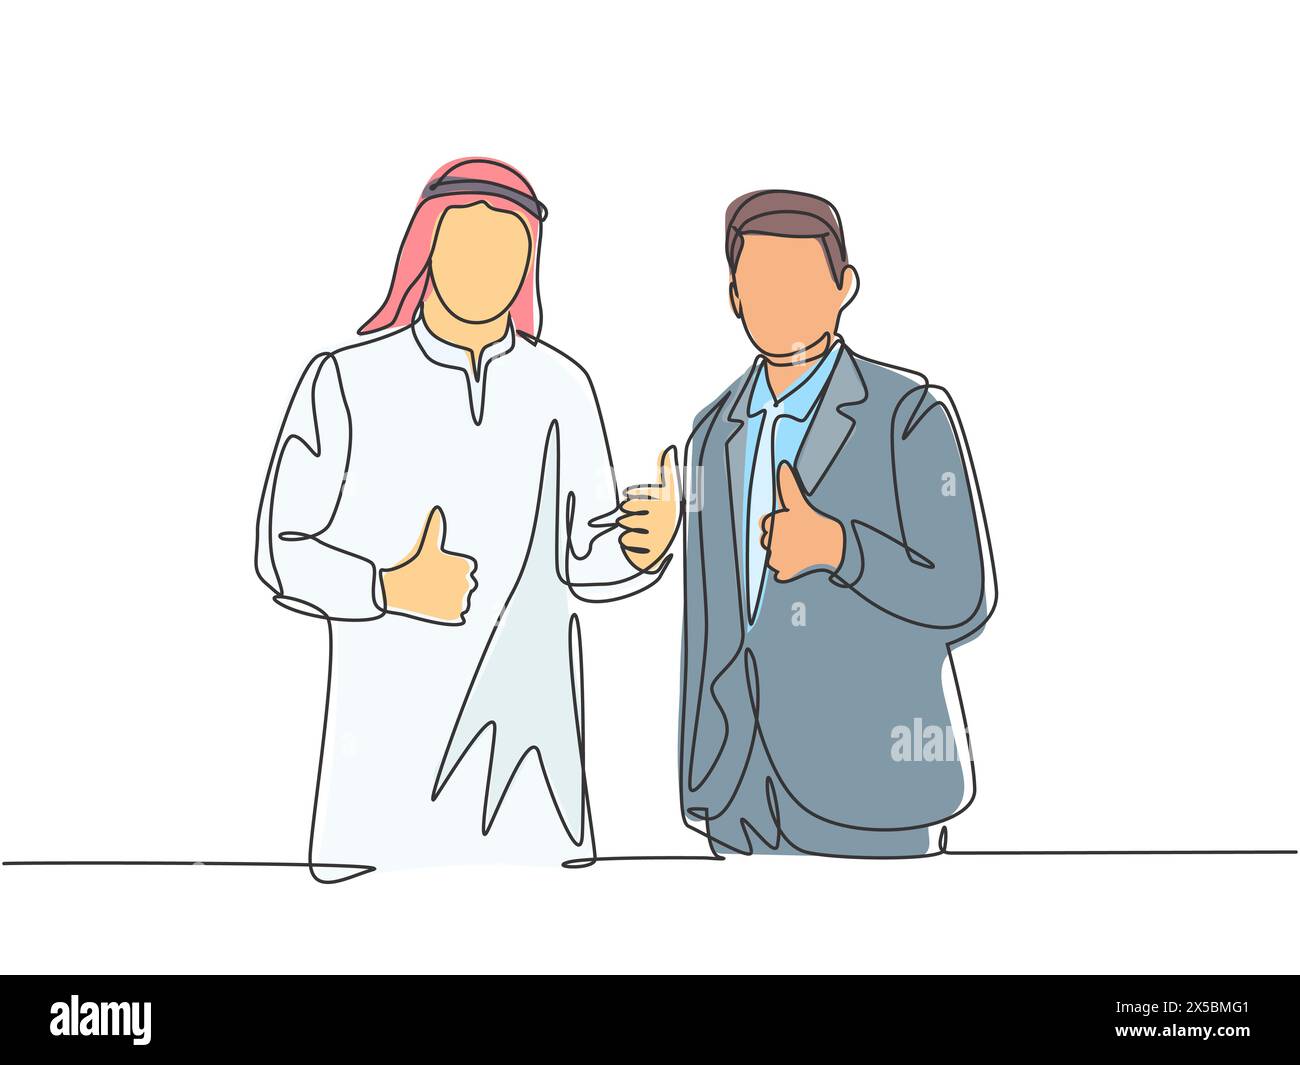 Eine einzige Linie Zeichnung von jungen glücklichen muslimischen Geschäftsmann tun Zusammenarbeit mit ausländischen Unternehmen. Saudi-Arabien Tuch shmag, kandora, Kopftuch, Khobe. Stock Vektor